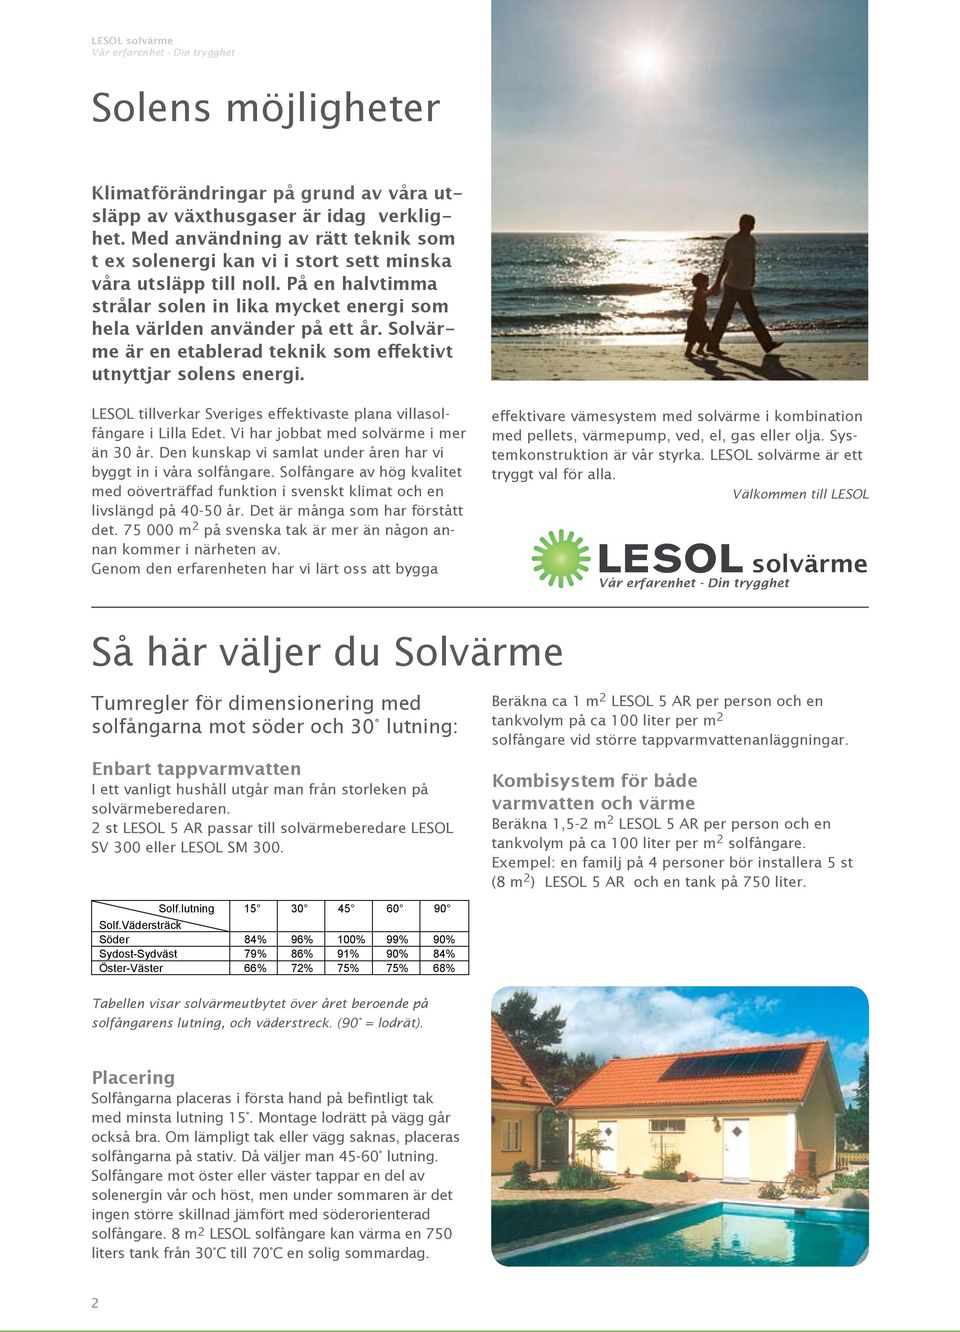 LESOL tillverkar Sveriges effektivaste plana villasolfångare i Lilla Edet. Vi har jobbat med solvärme i mer än 30 år. Den kunskap vi samlat under åren har vi byggt in i våra solfångare.